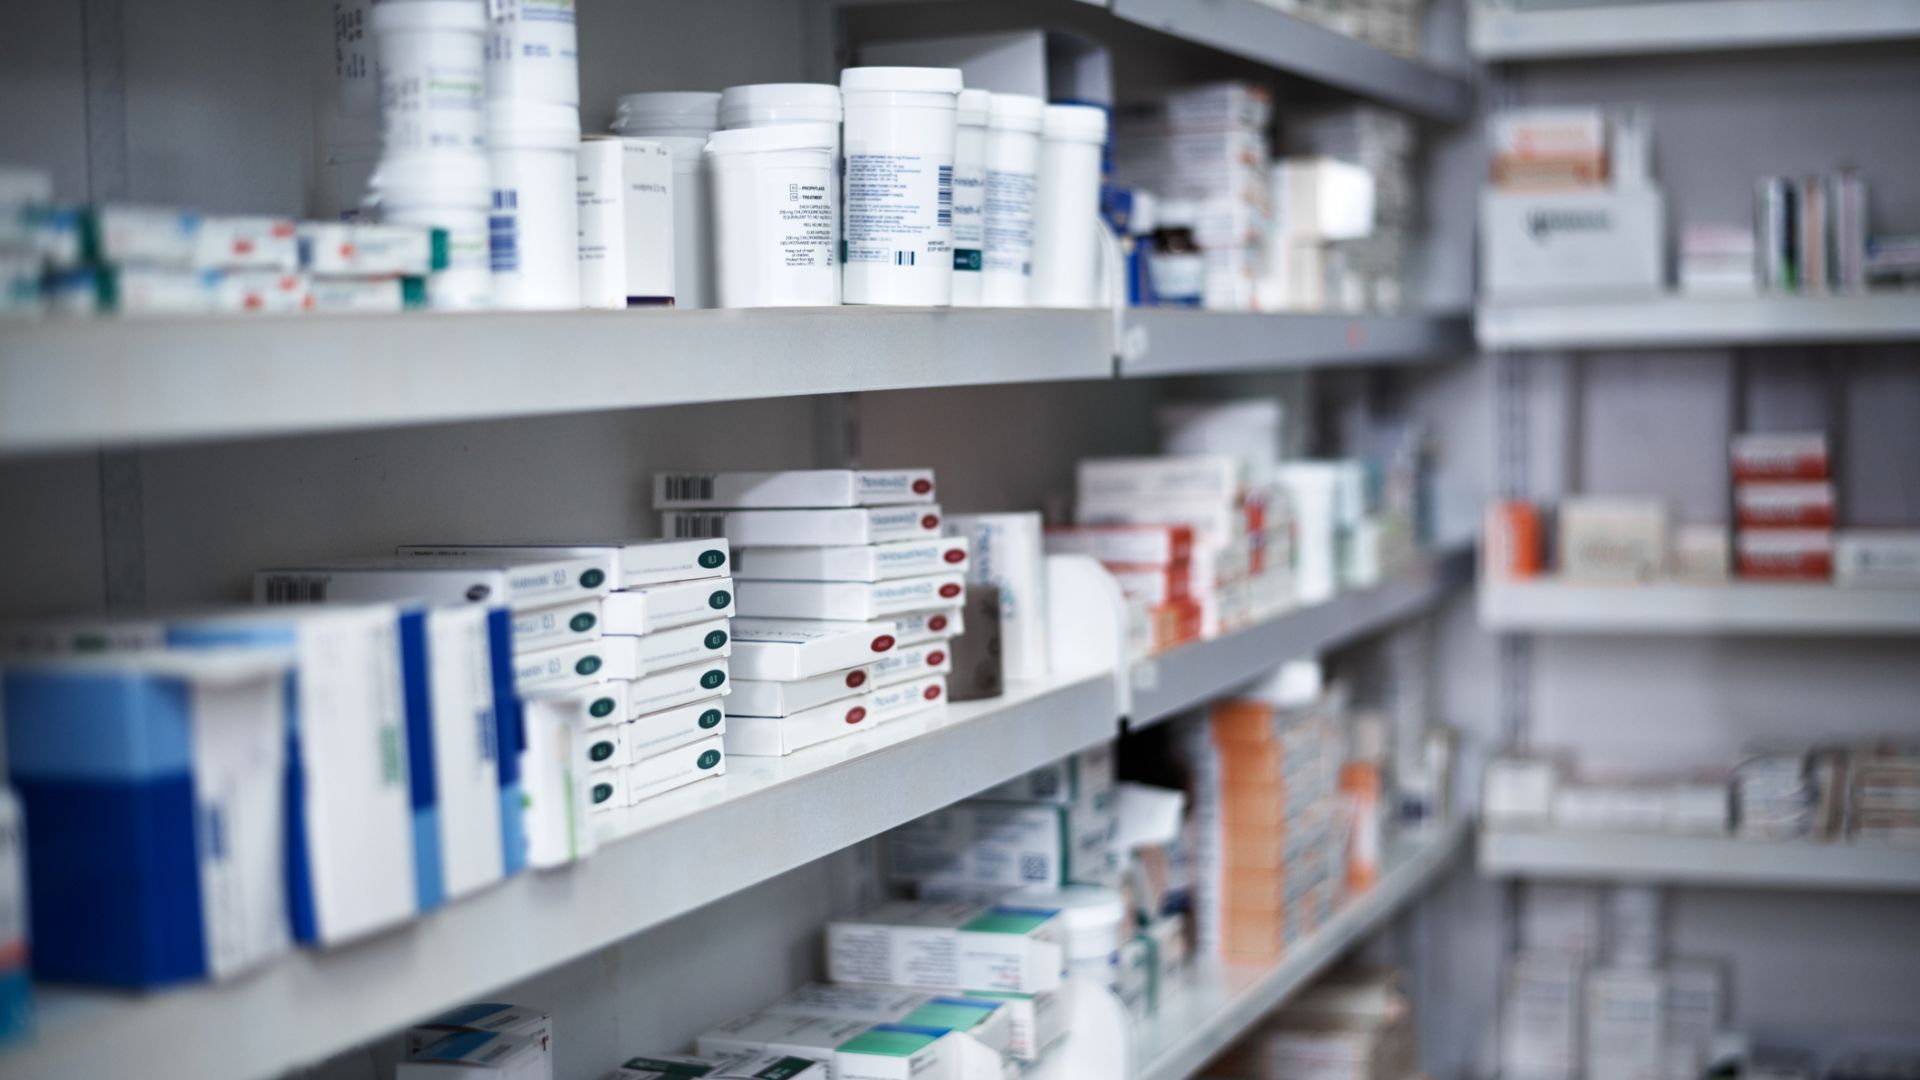 Евтини лекарства изчезват от аптеките, подменят ги със скъпи